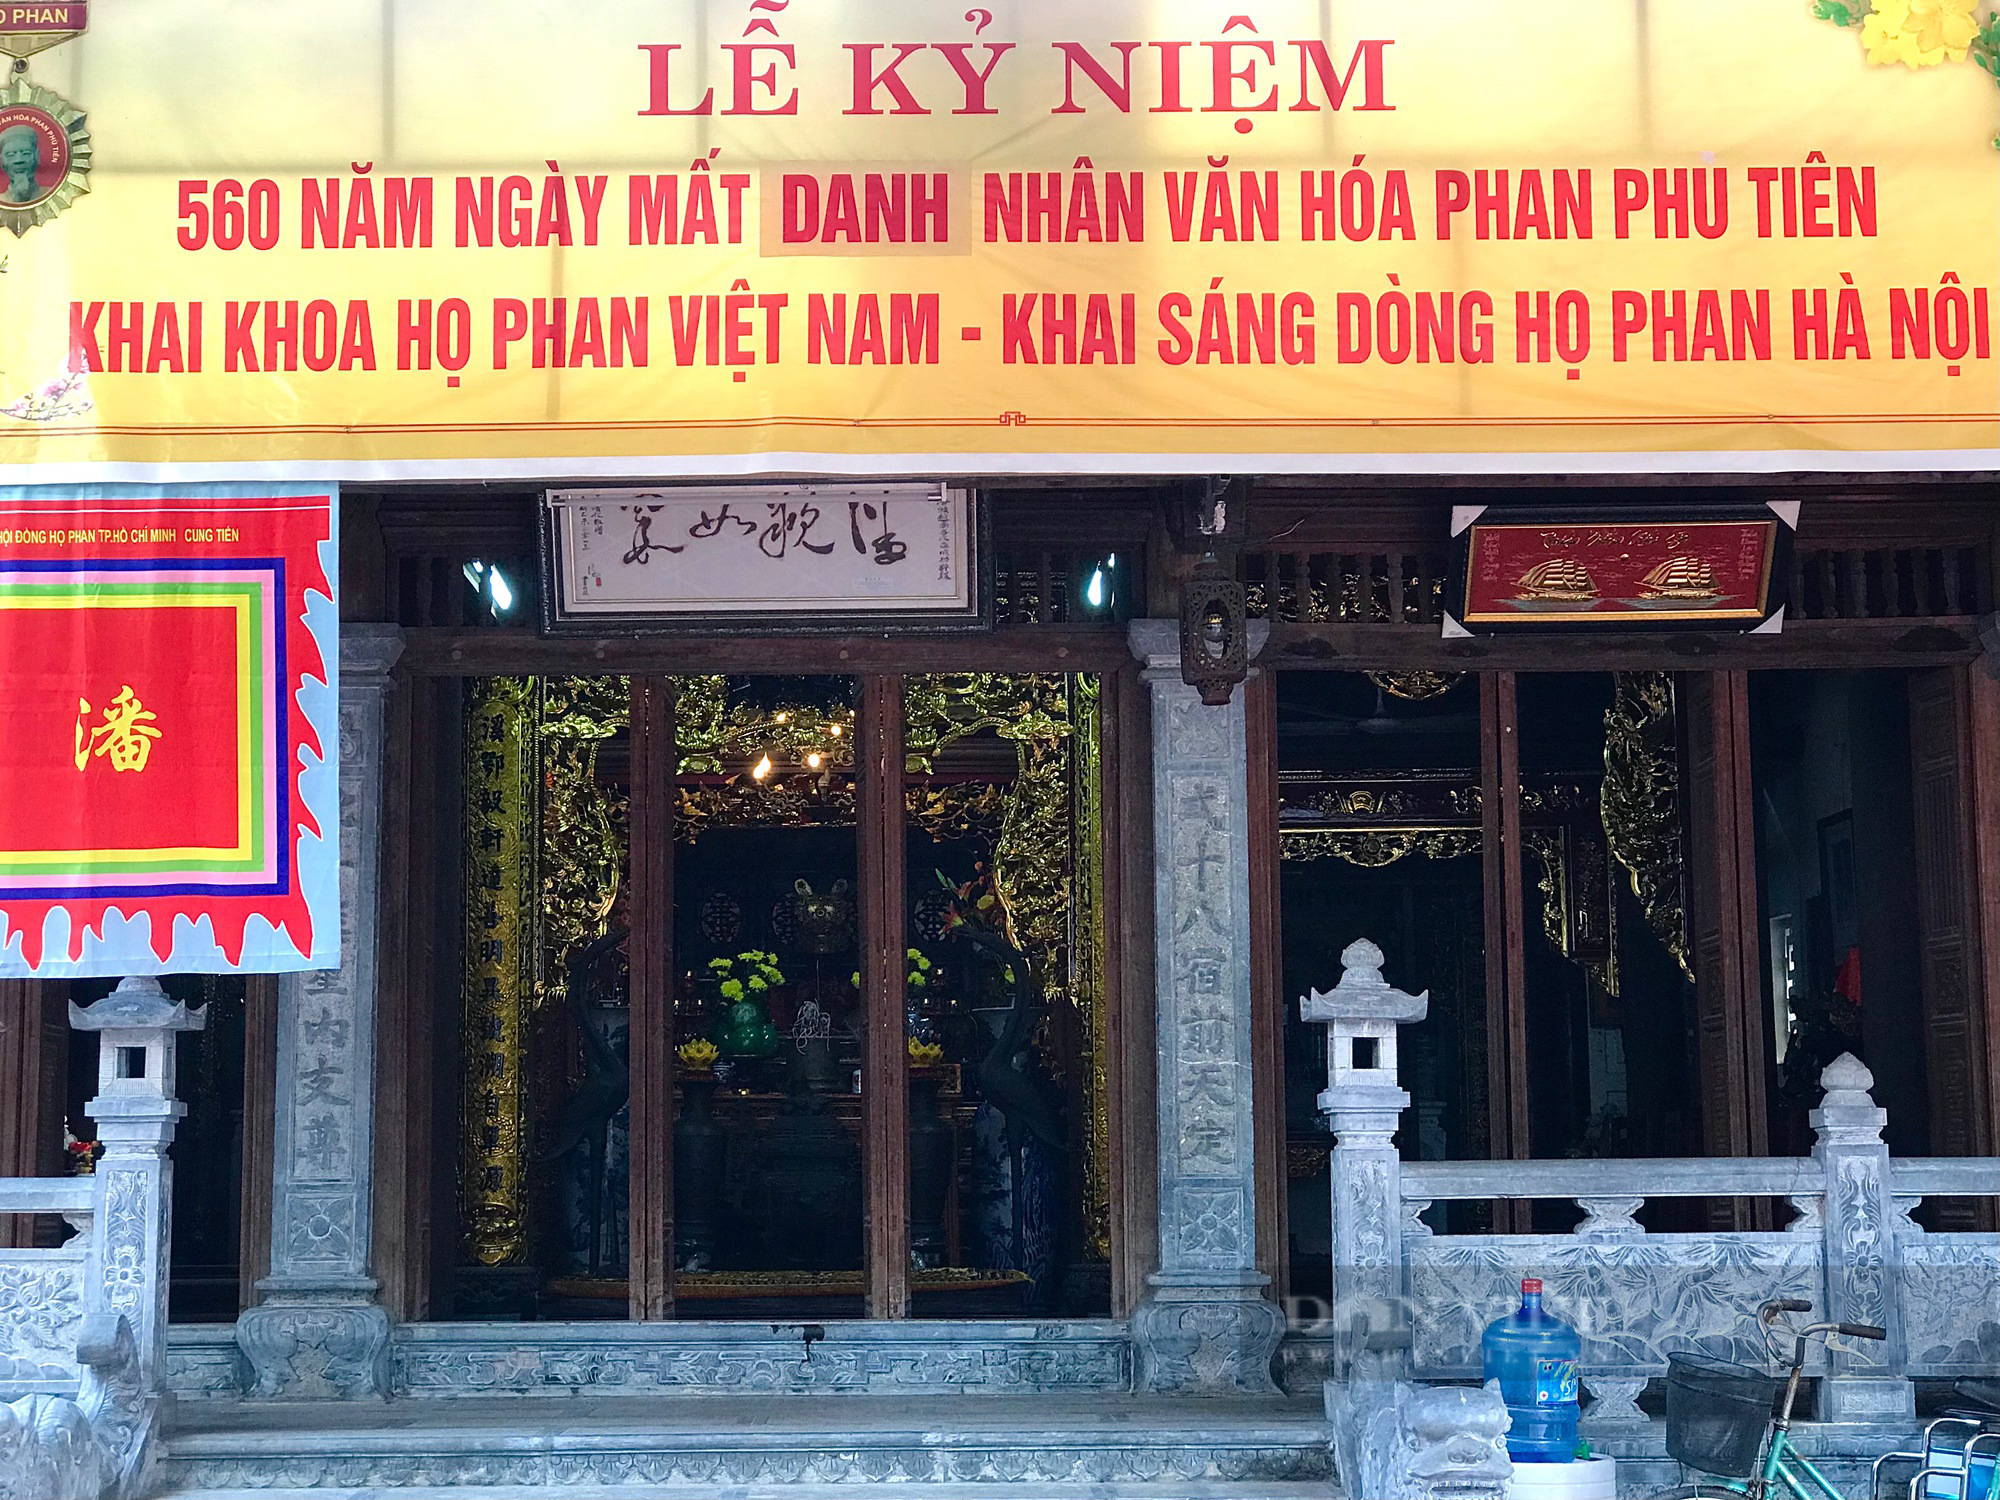 Chiêm ngưỡng nhà thờ cổ 400 tuổi của dòng họ Phan ở Hà Nội - Ảnh 3.